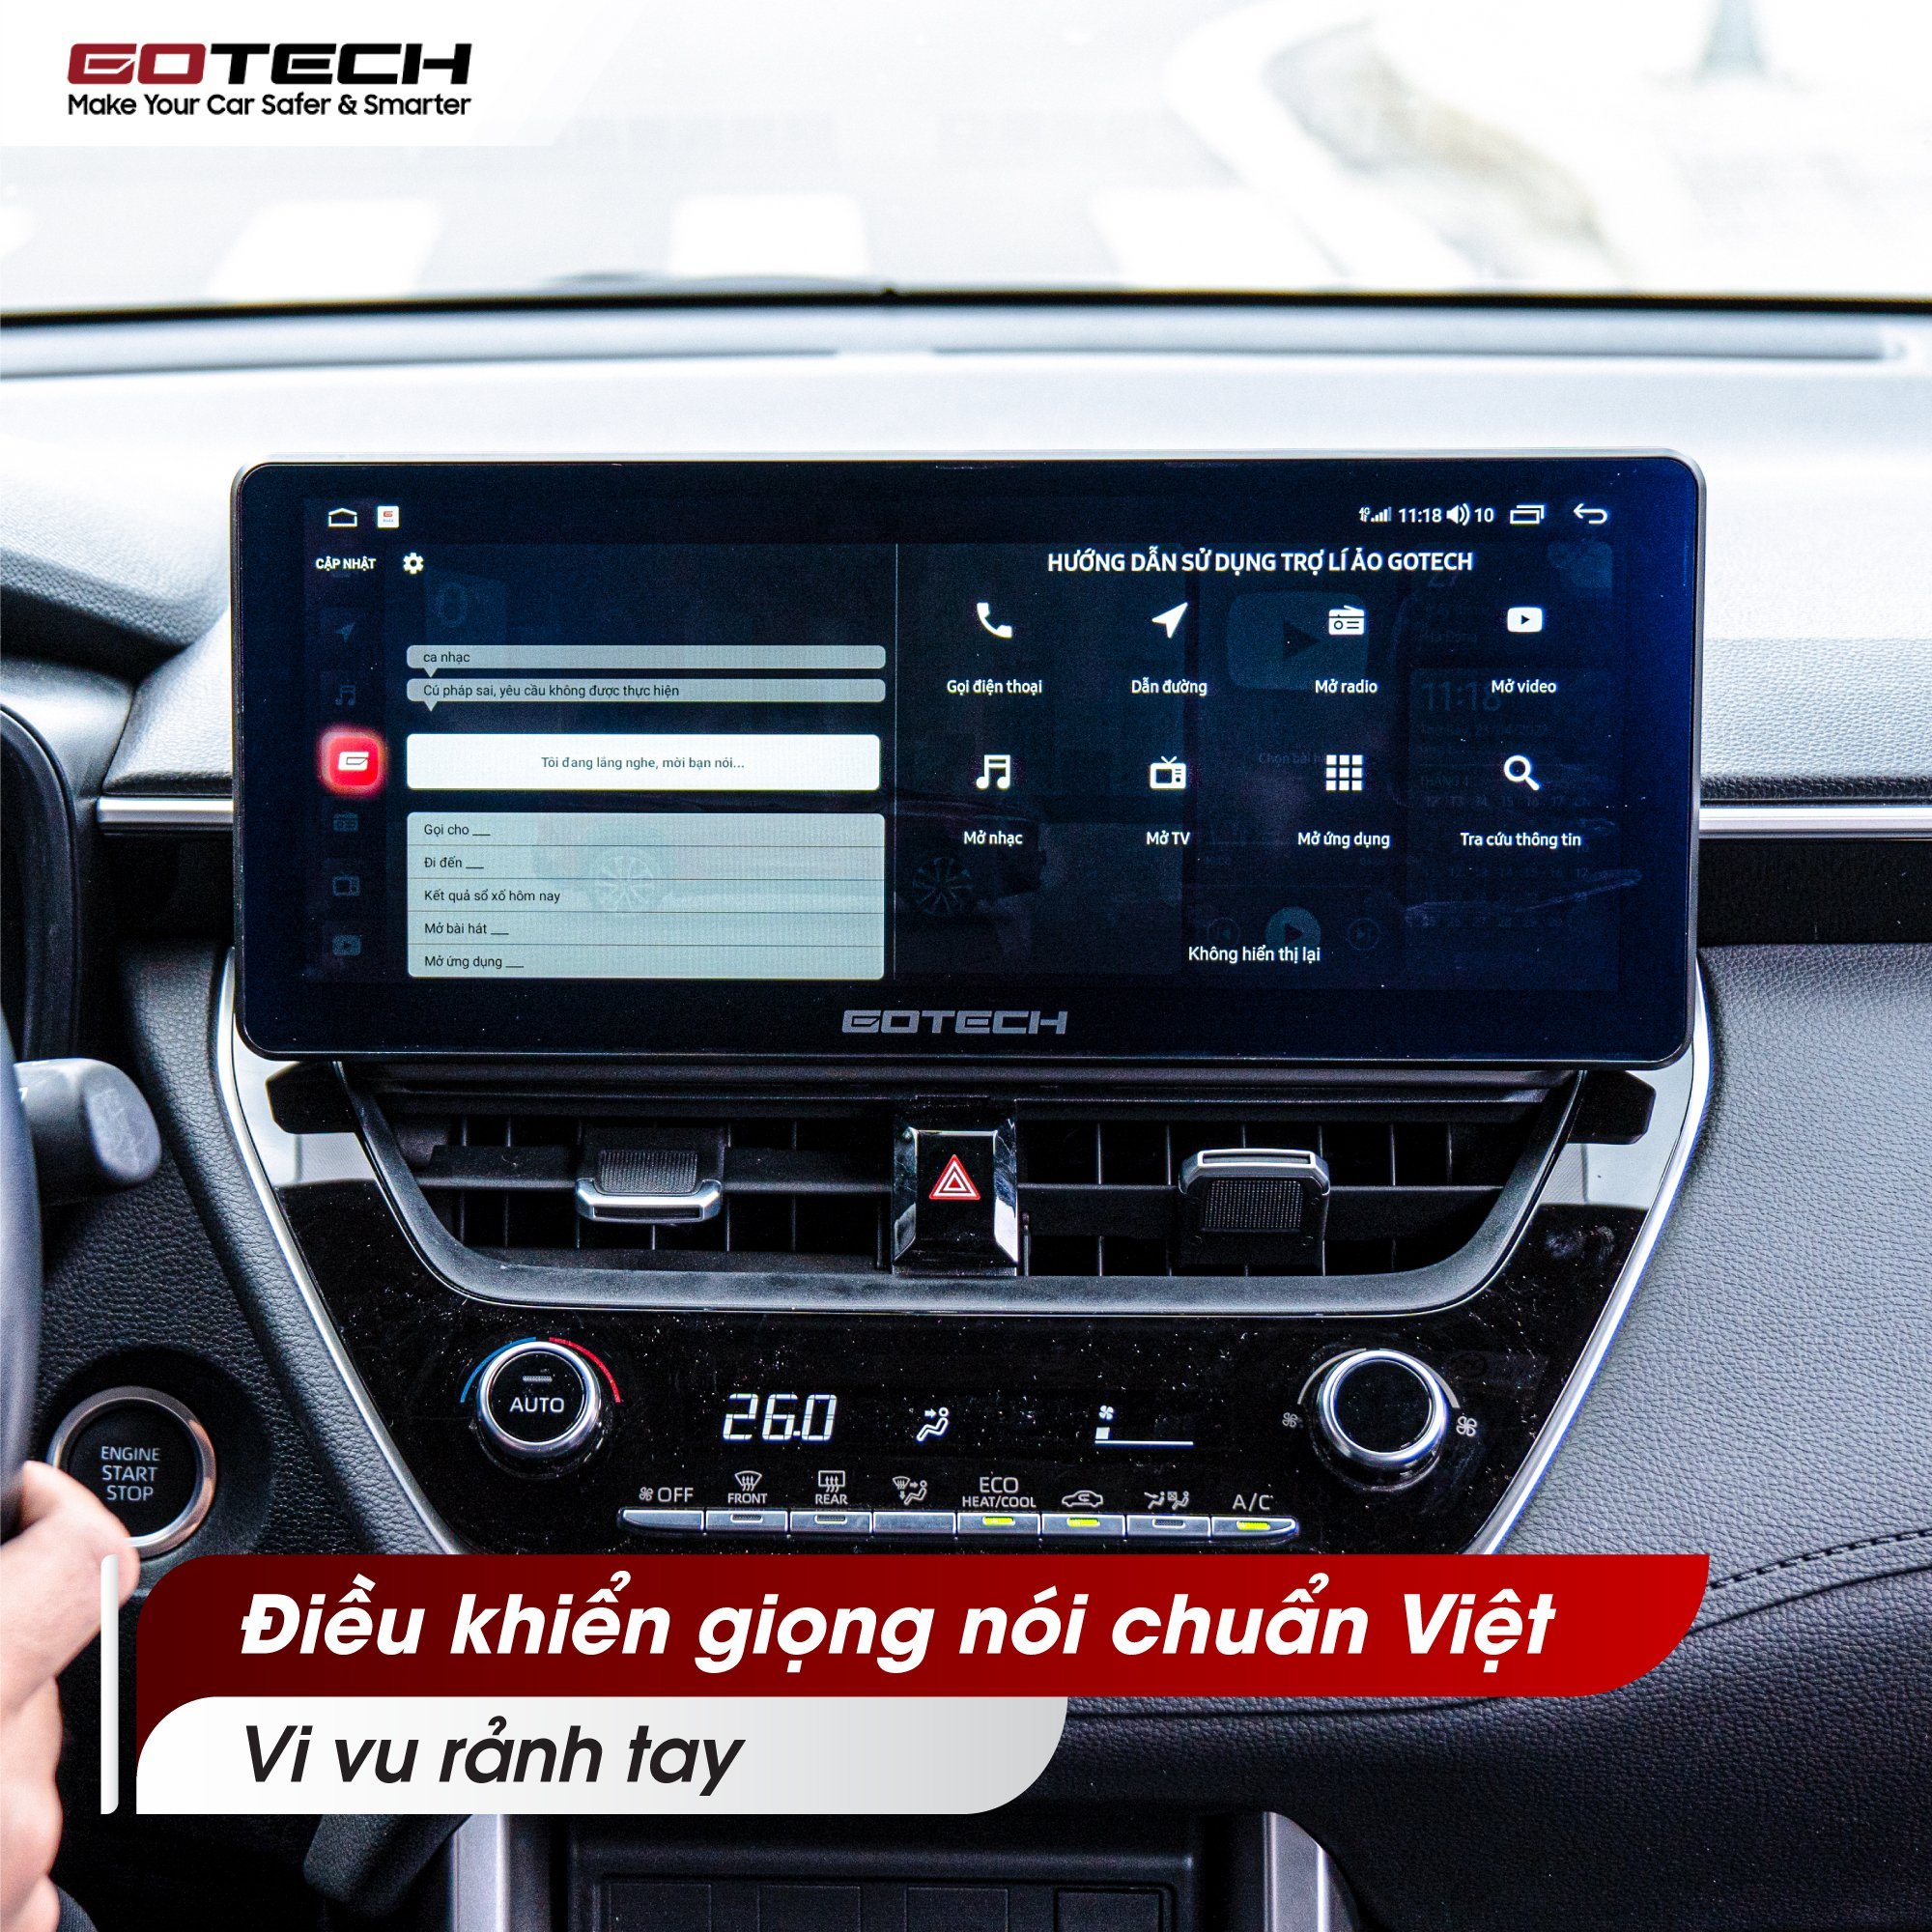 Điều khiển giọng nói rảnh tay trên màn hình ô tô thông minh Gotech GT Evo Toyota Corolla Cross